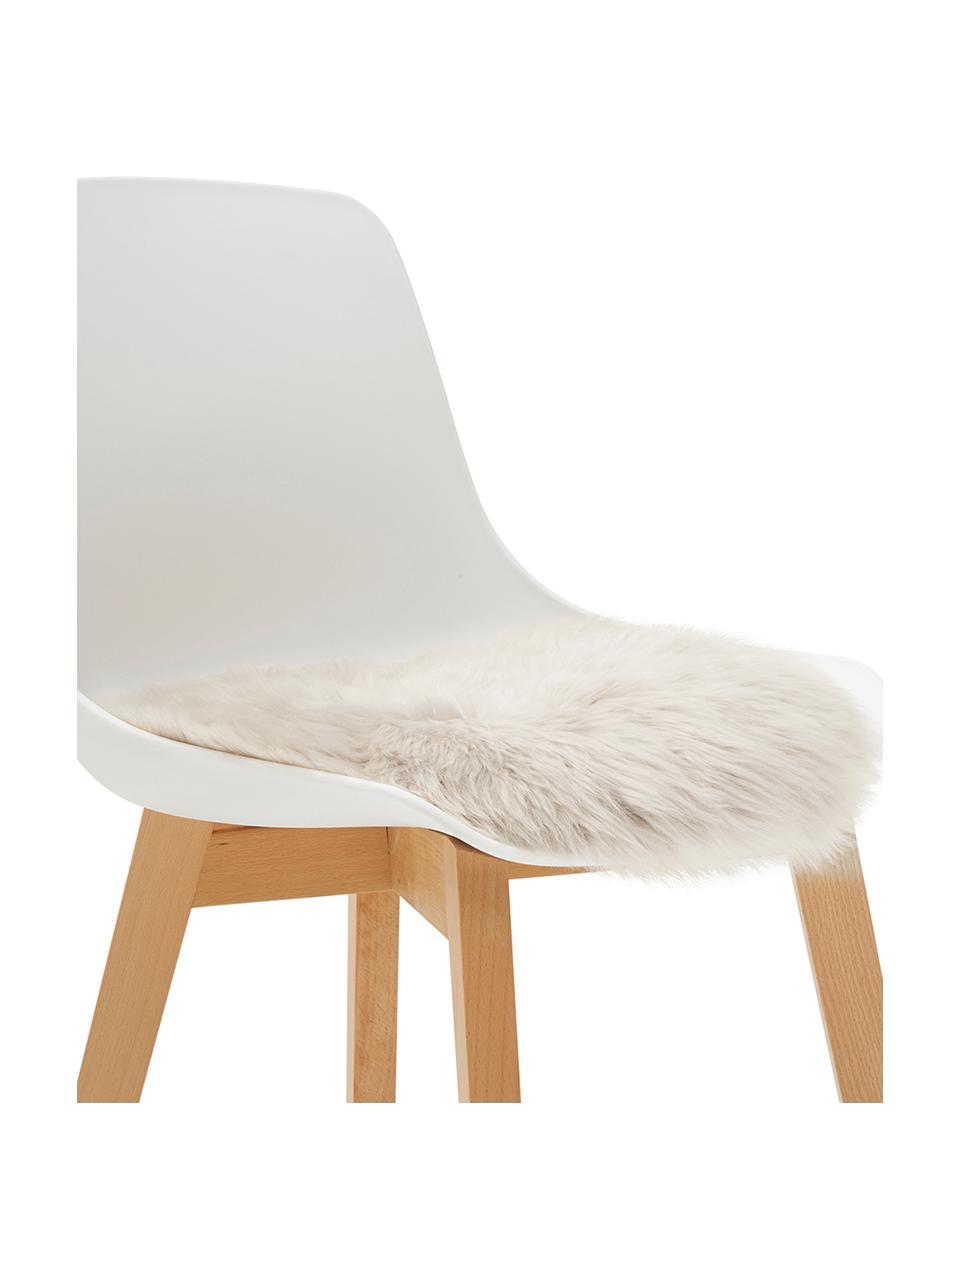 Galette de chaise ronde peau de mouton lisse Oslo, Beige, Ø 37 cm